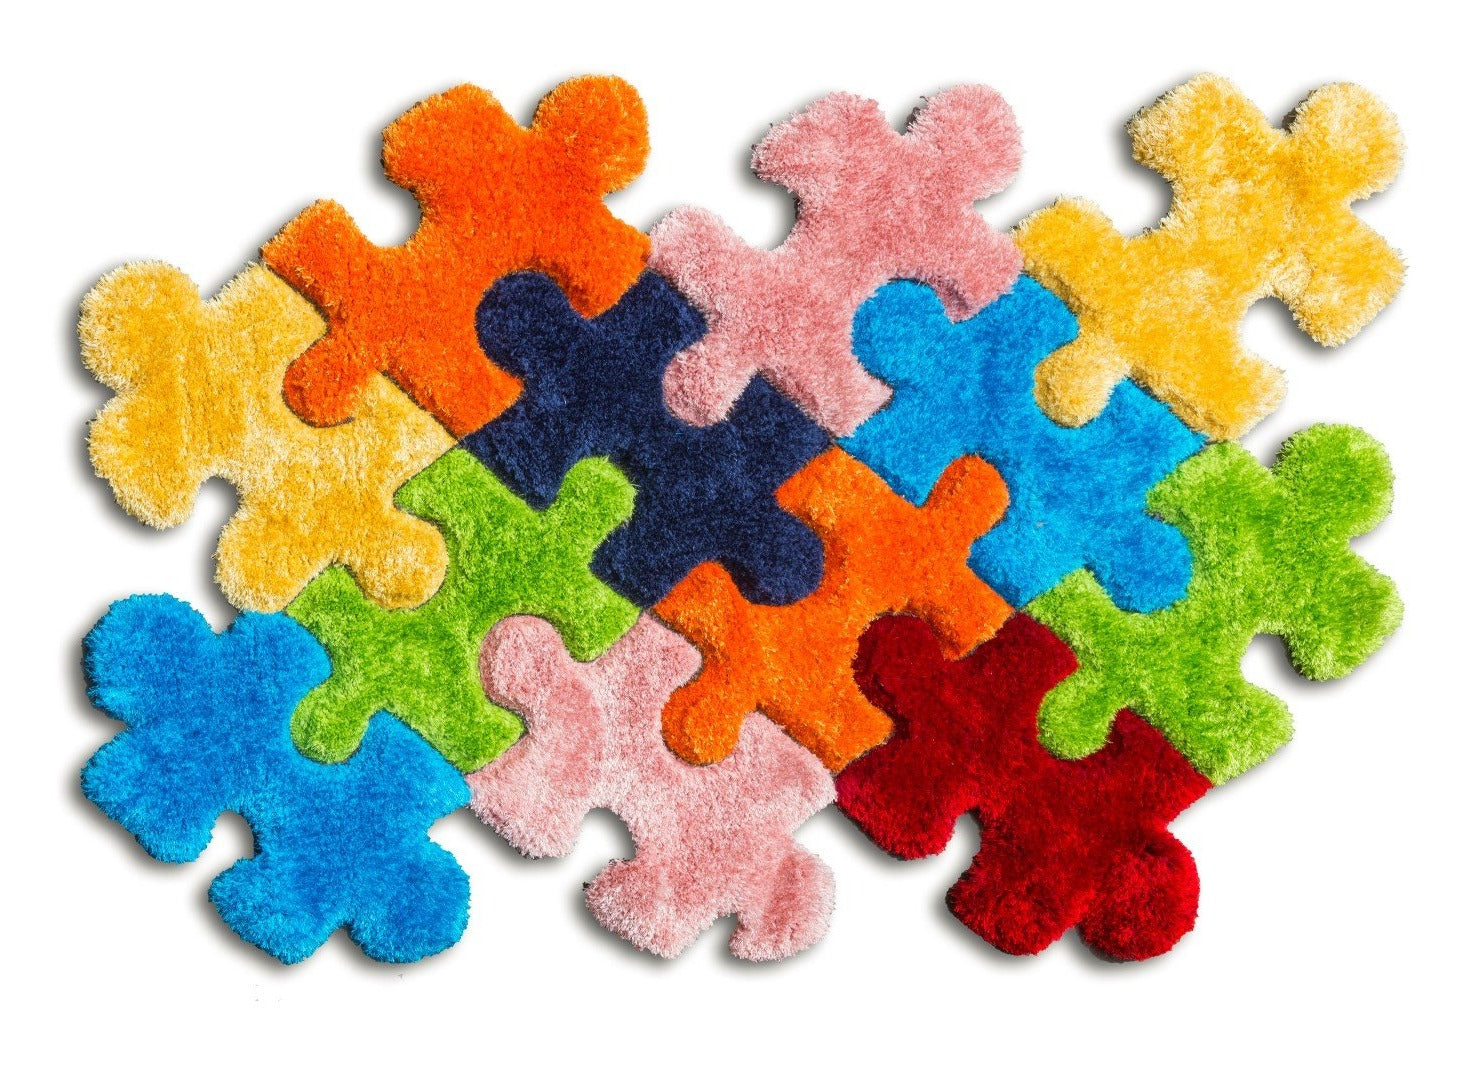 Multicolour 3D Shaggy Rug - Doodle Jigsaw